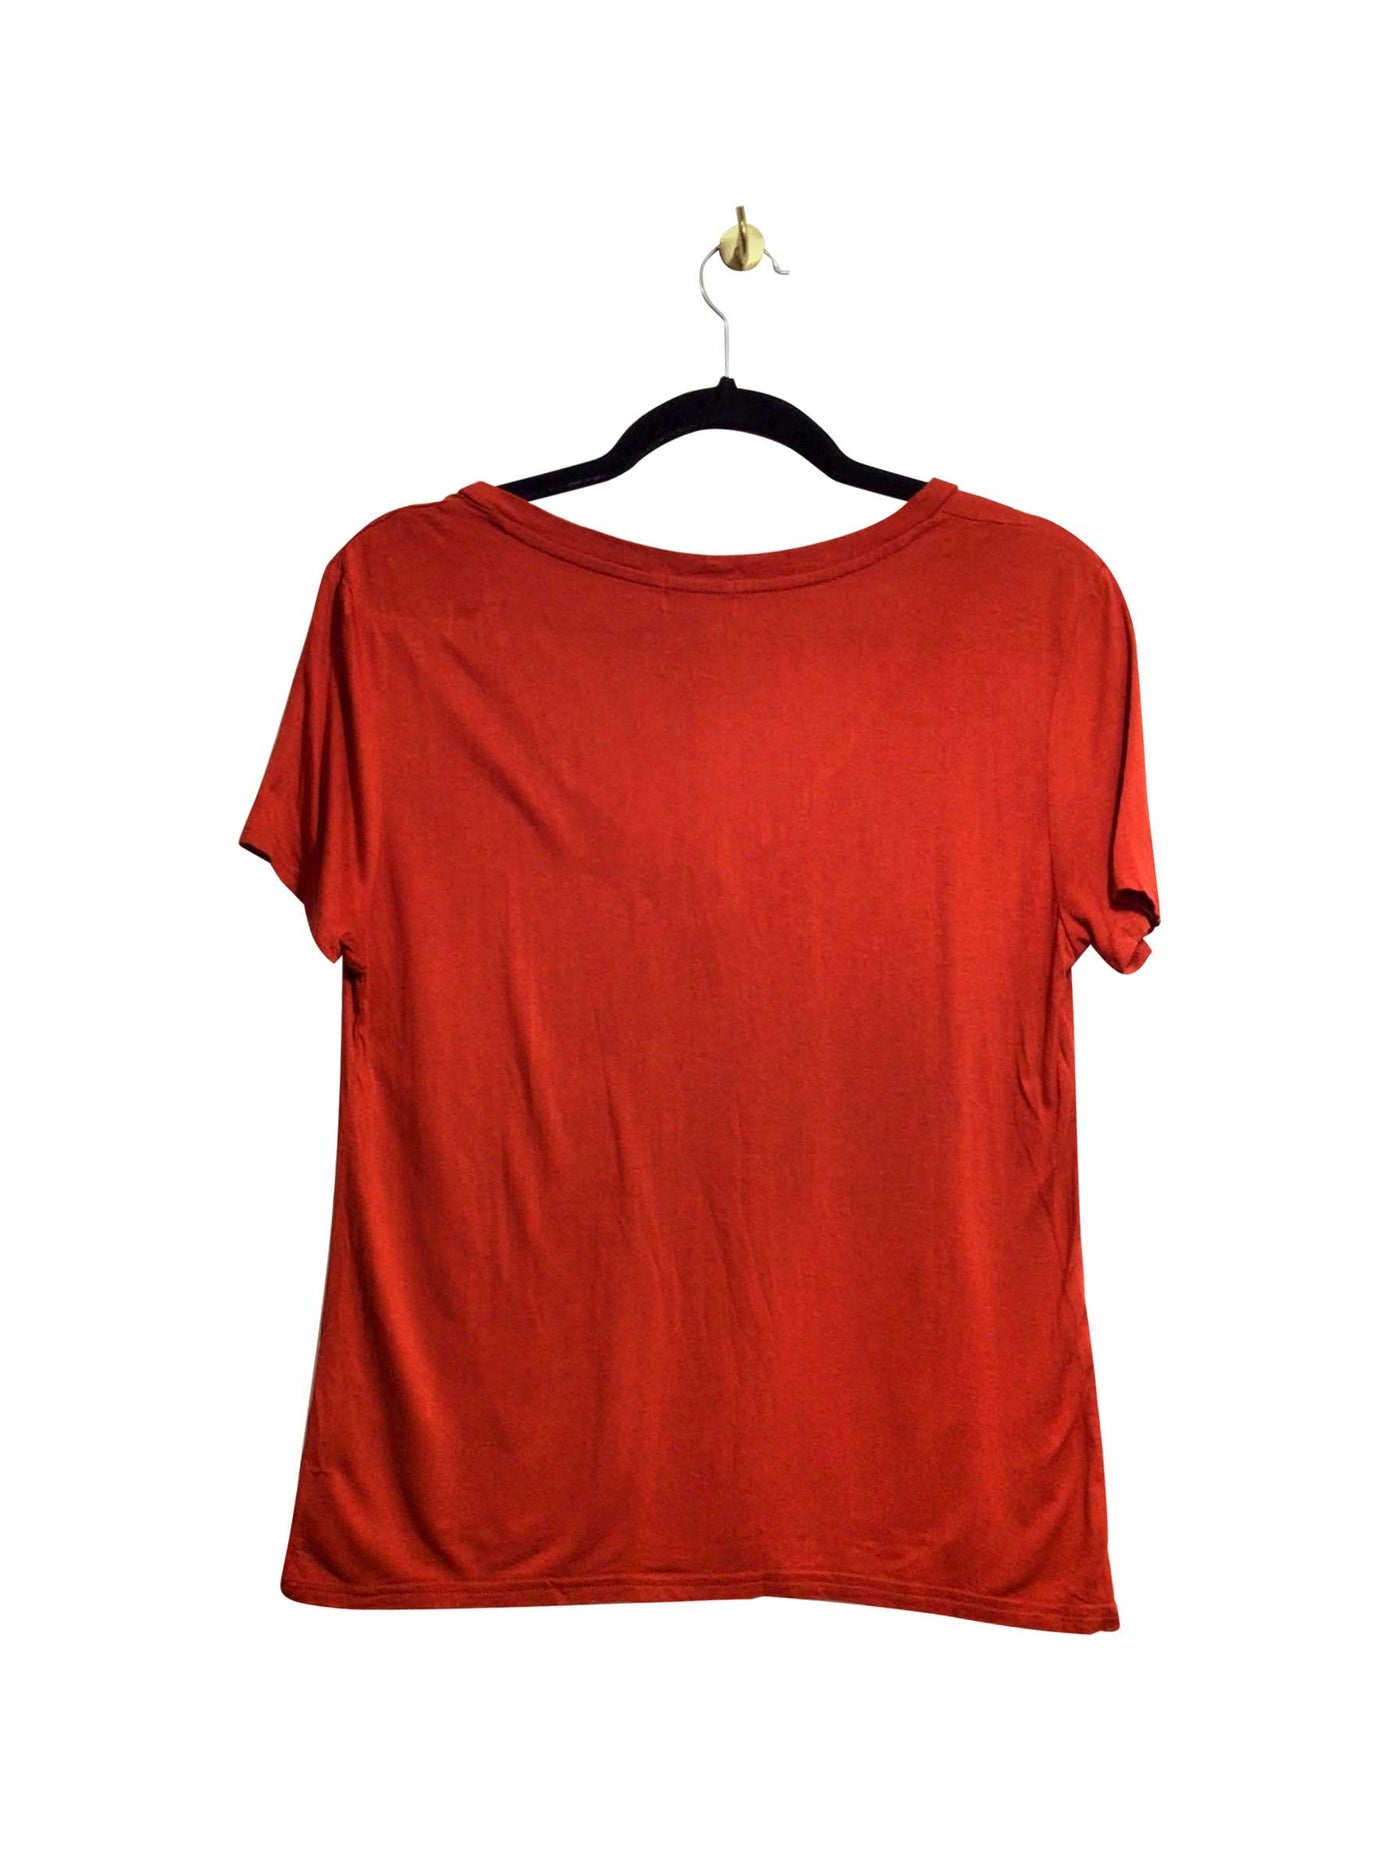 OLD NAVY Regular fit T-shirt in Red  -  XS  7.99 Koop